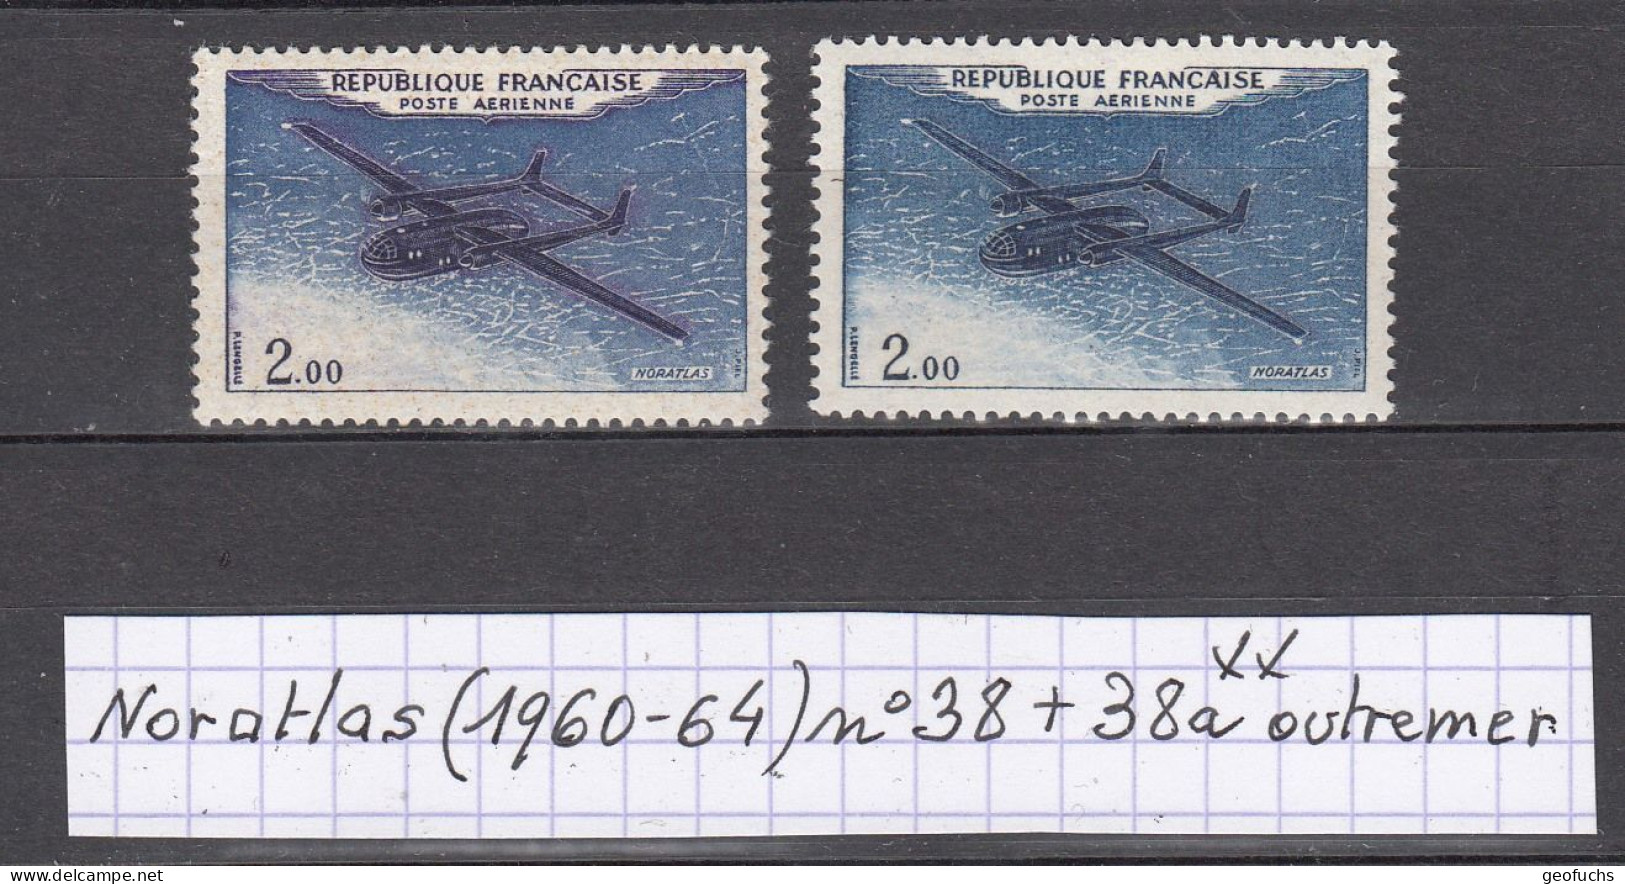 France Prototypes Noratlas (1960-64) Poste Aérienne Y/T Variété N° 38 + 38a (outremer) Neufs ** - Ungebraucht